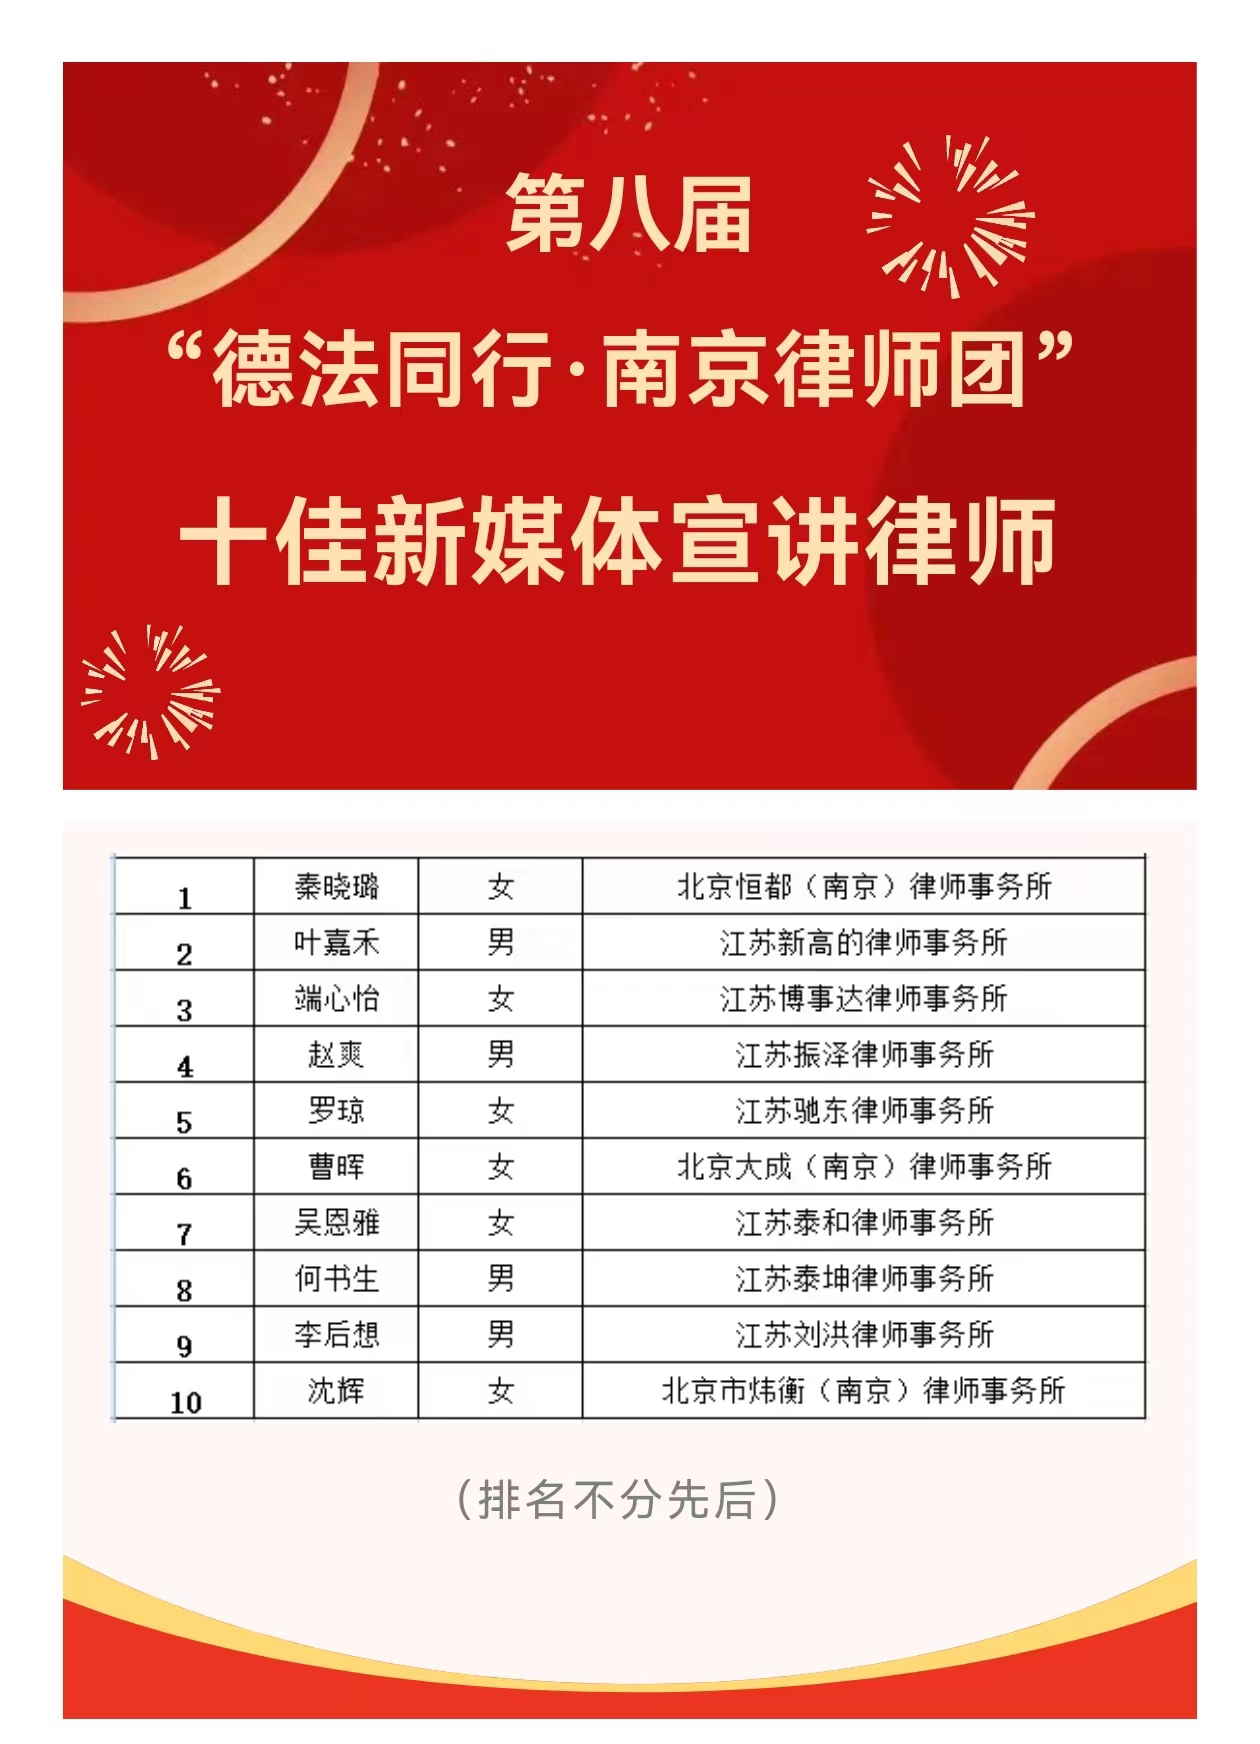 祝贺李后想获评第八届南京律师团“十佳新媒体宣讲律师”